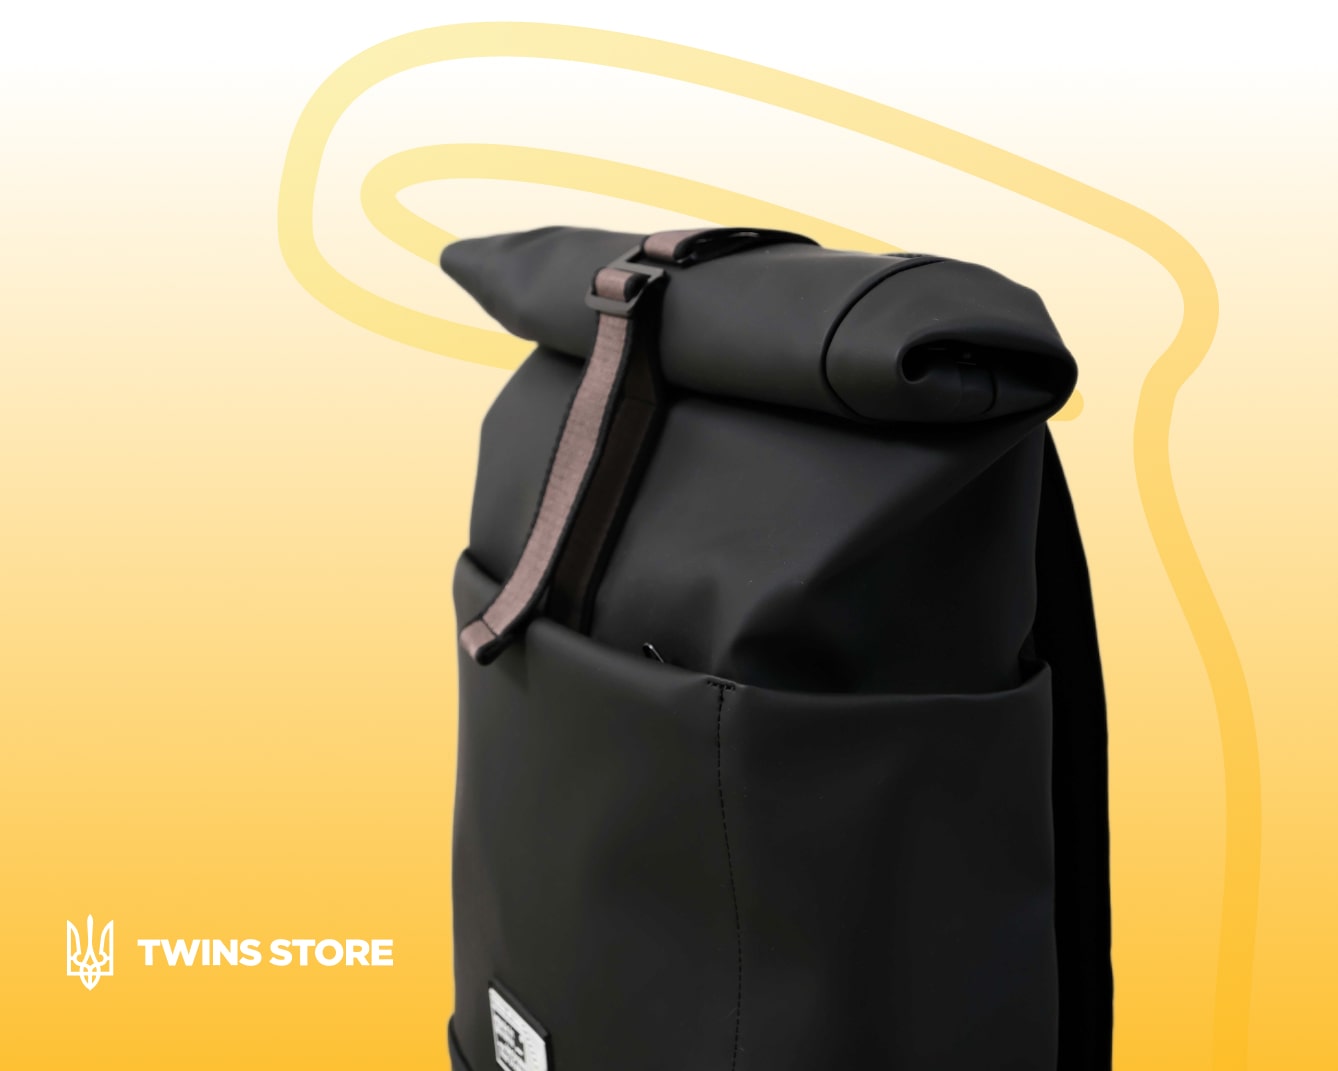  замовити стильний хлопчачий рюкзак роллтоп на Twinsstore